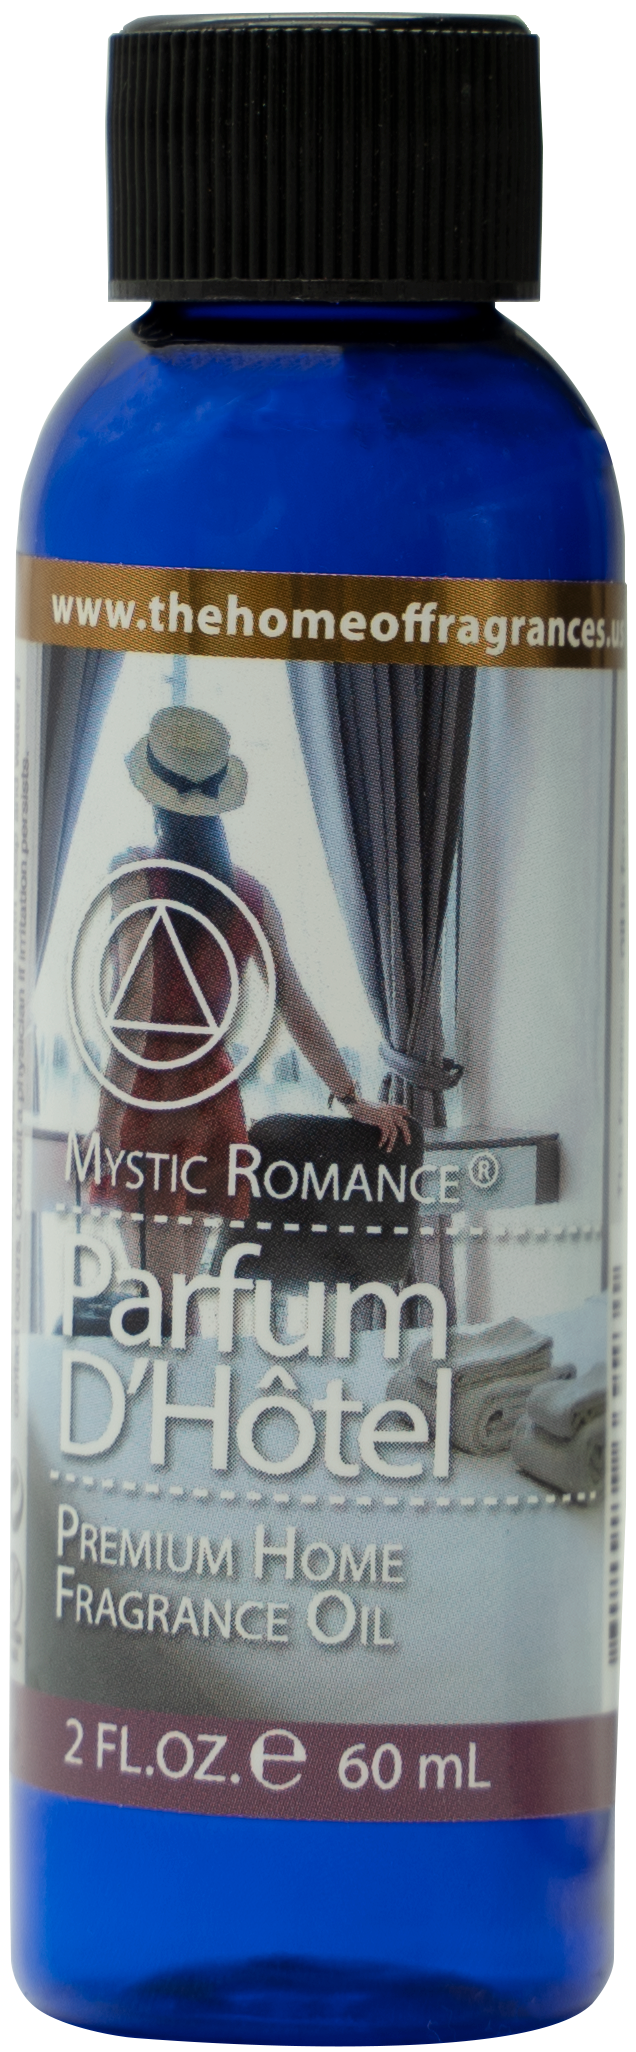 Parfum D'Hotel Premium Fragrance Oil